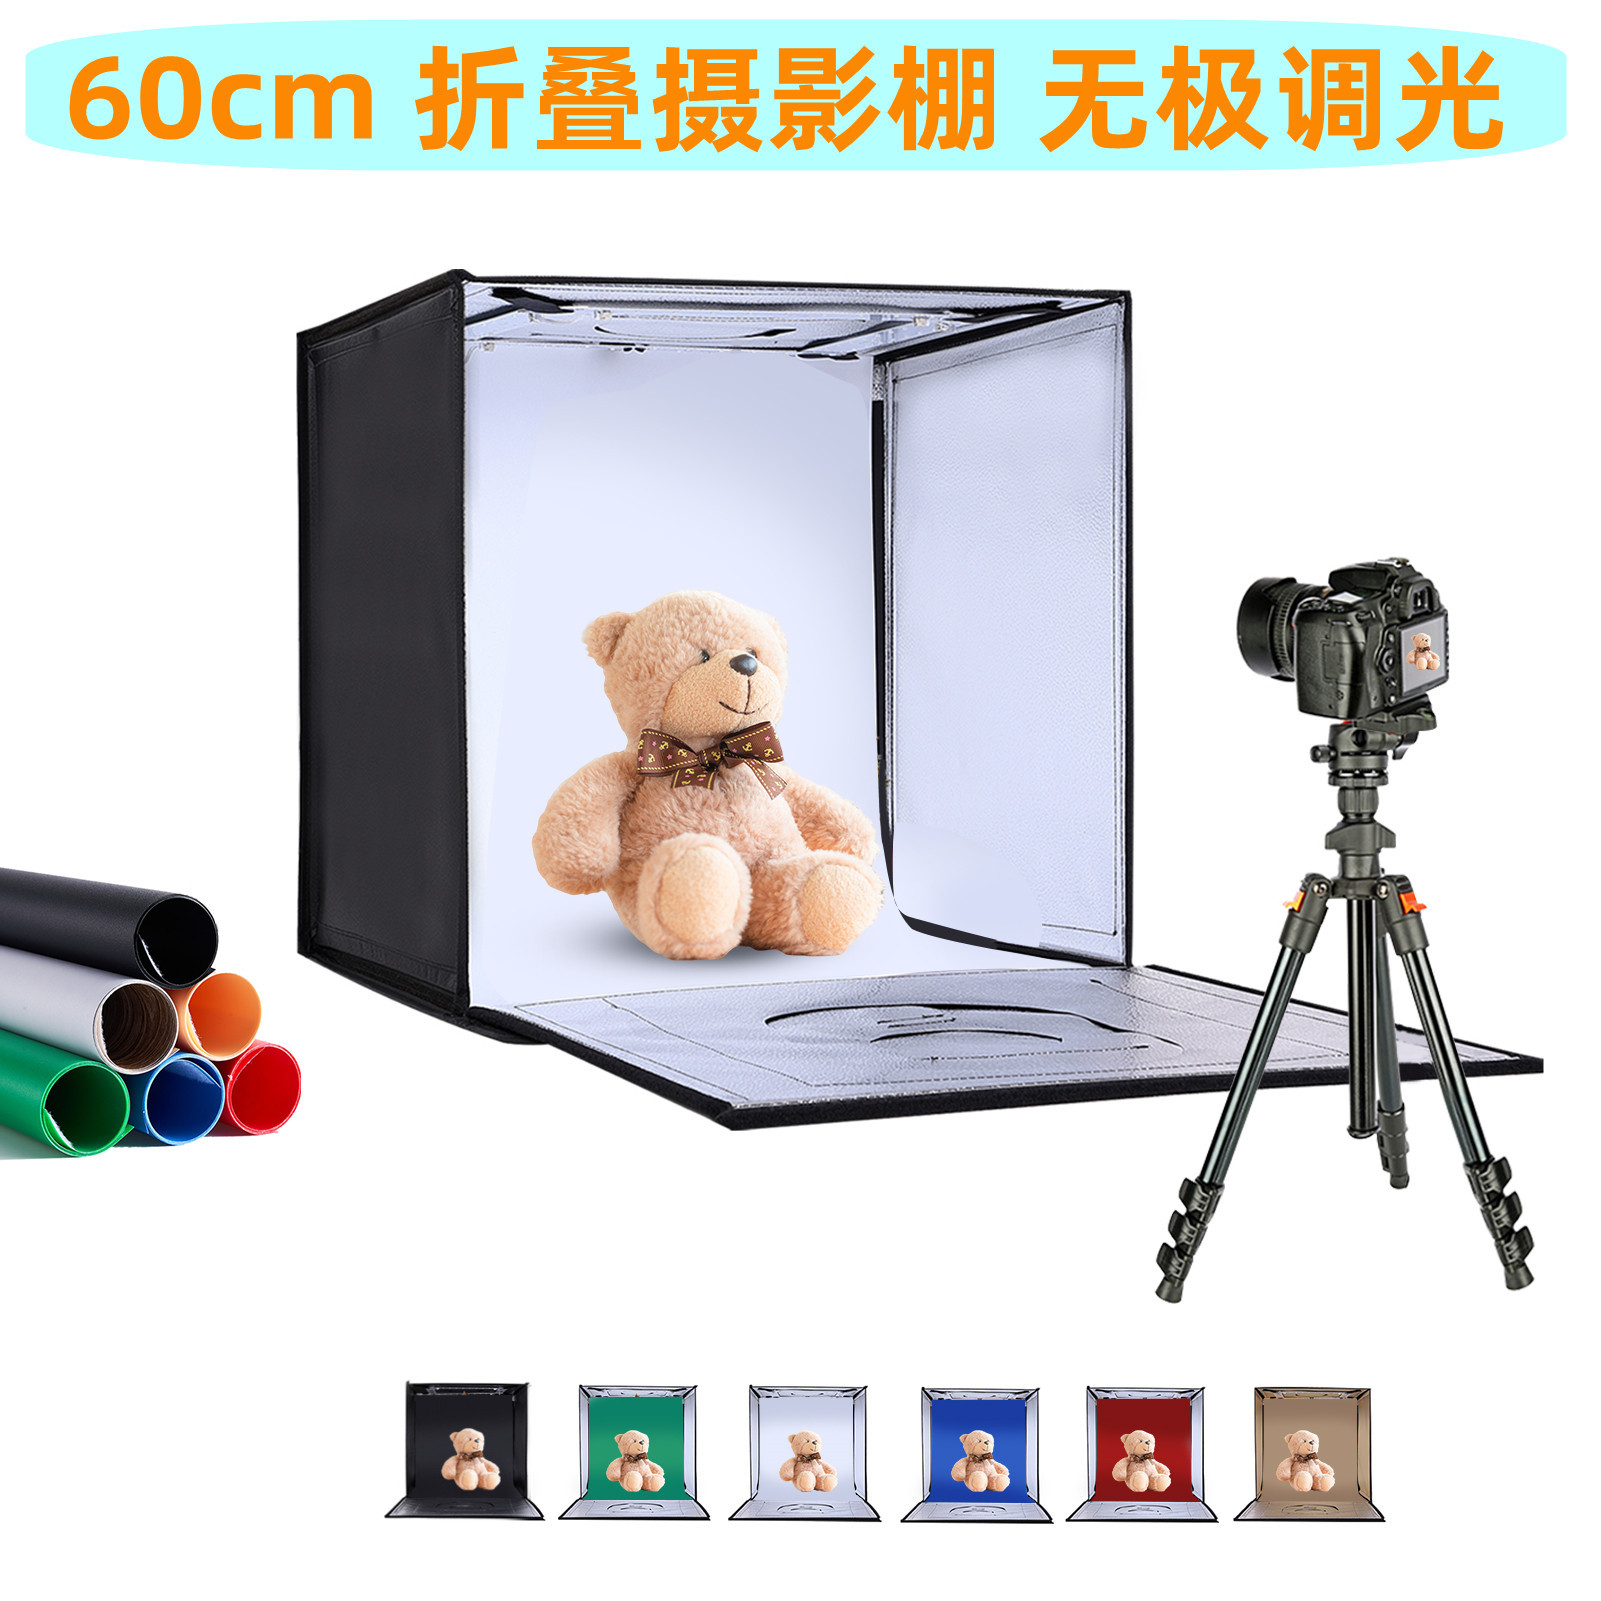 60cm便携式折叠摄影棚 LED可调光亮棚 拍照灯箱 摄影器材 柔光箱|ru